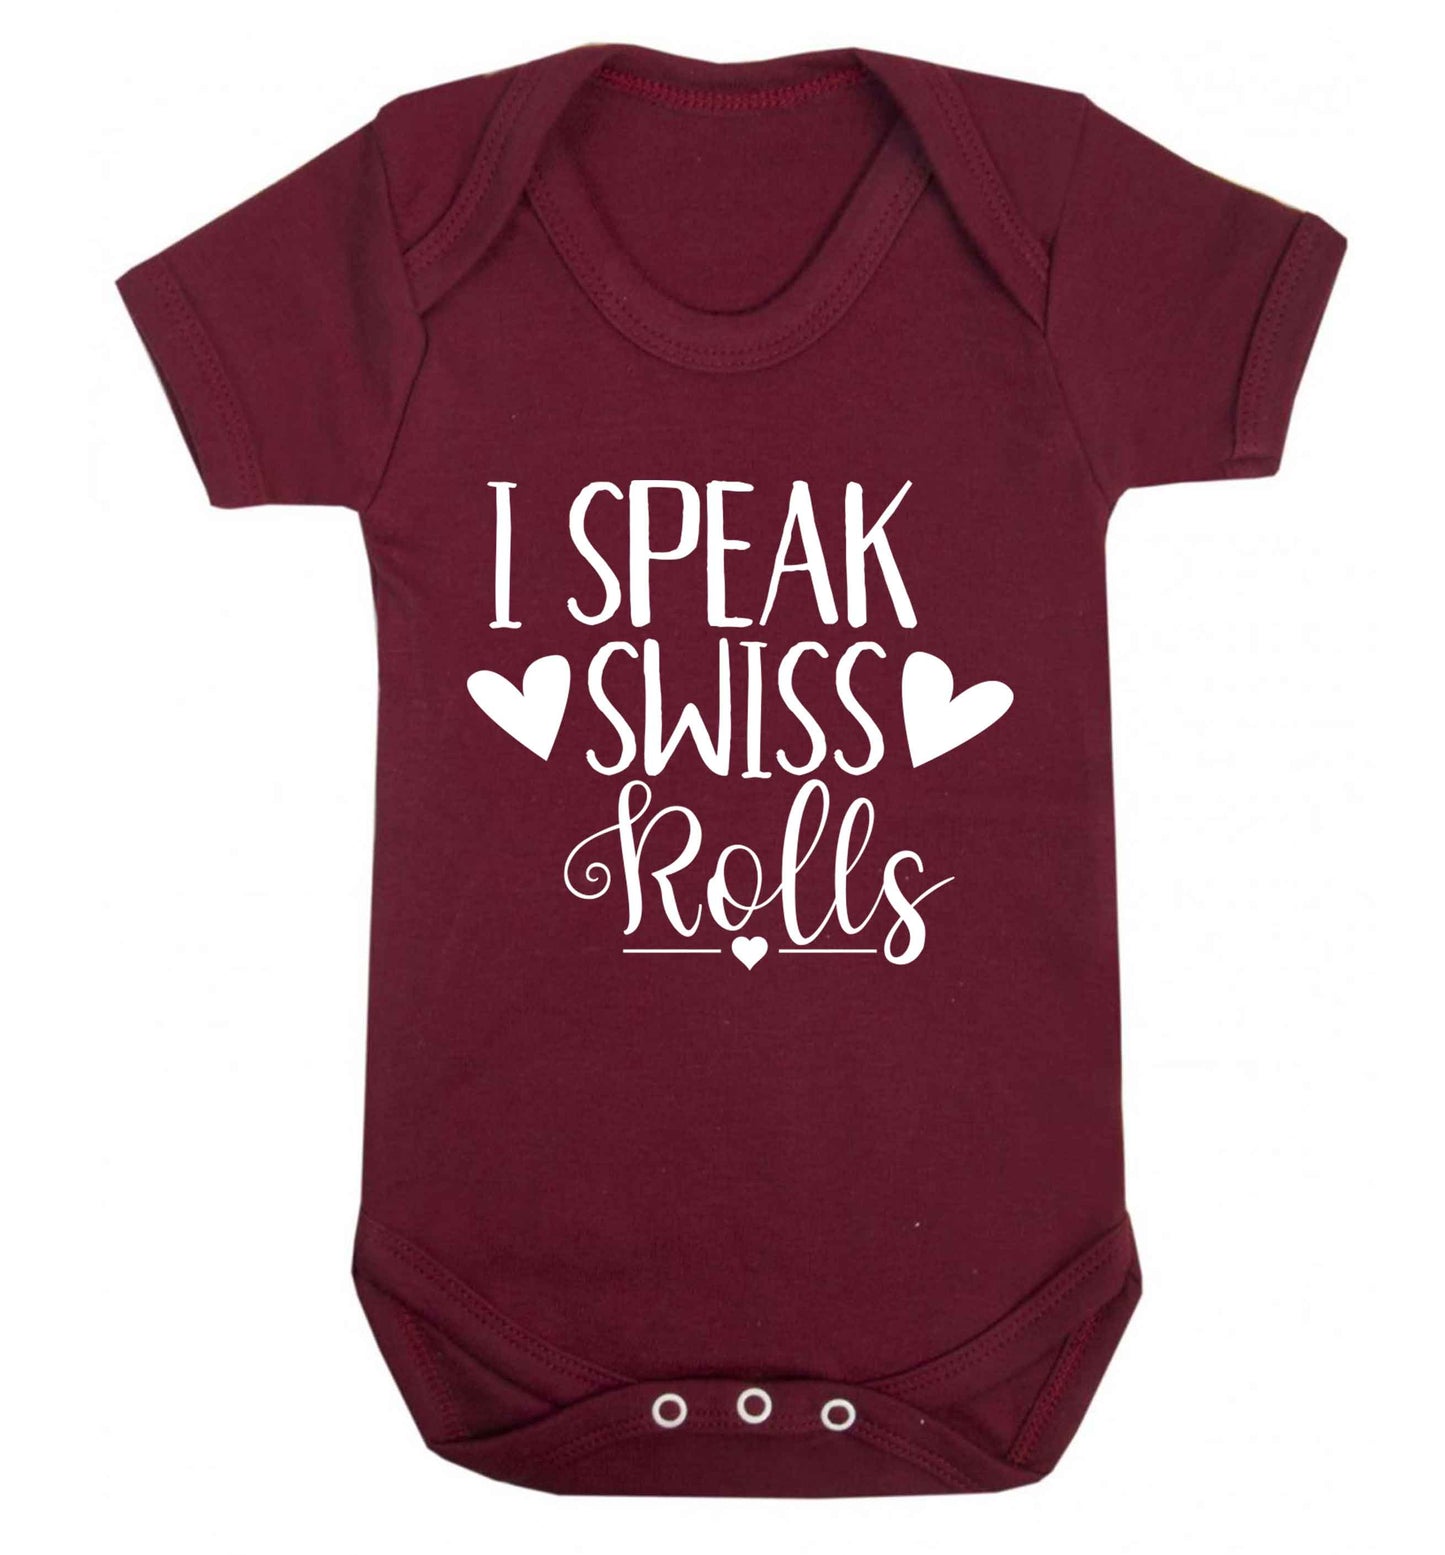 I speak swiss..rolls Baby Vest maroon 18-24 months